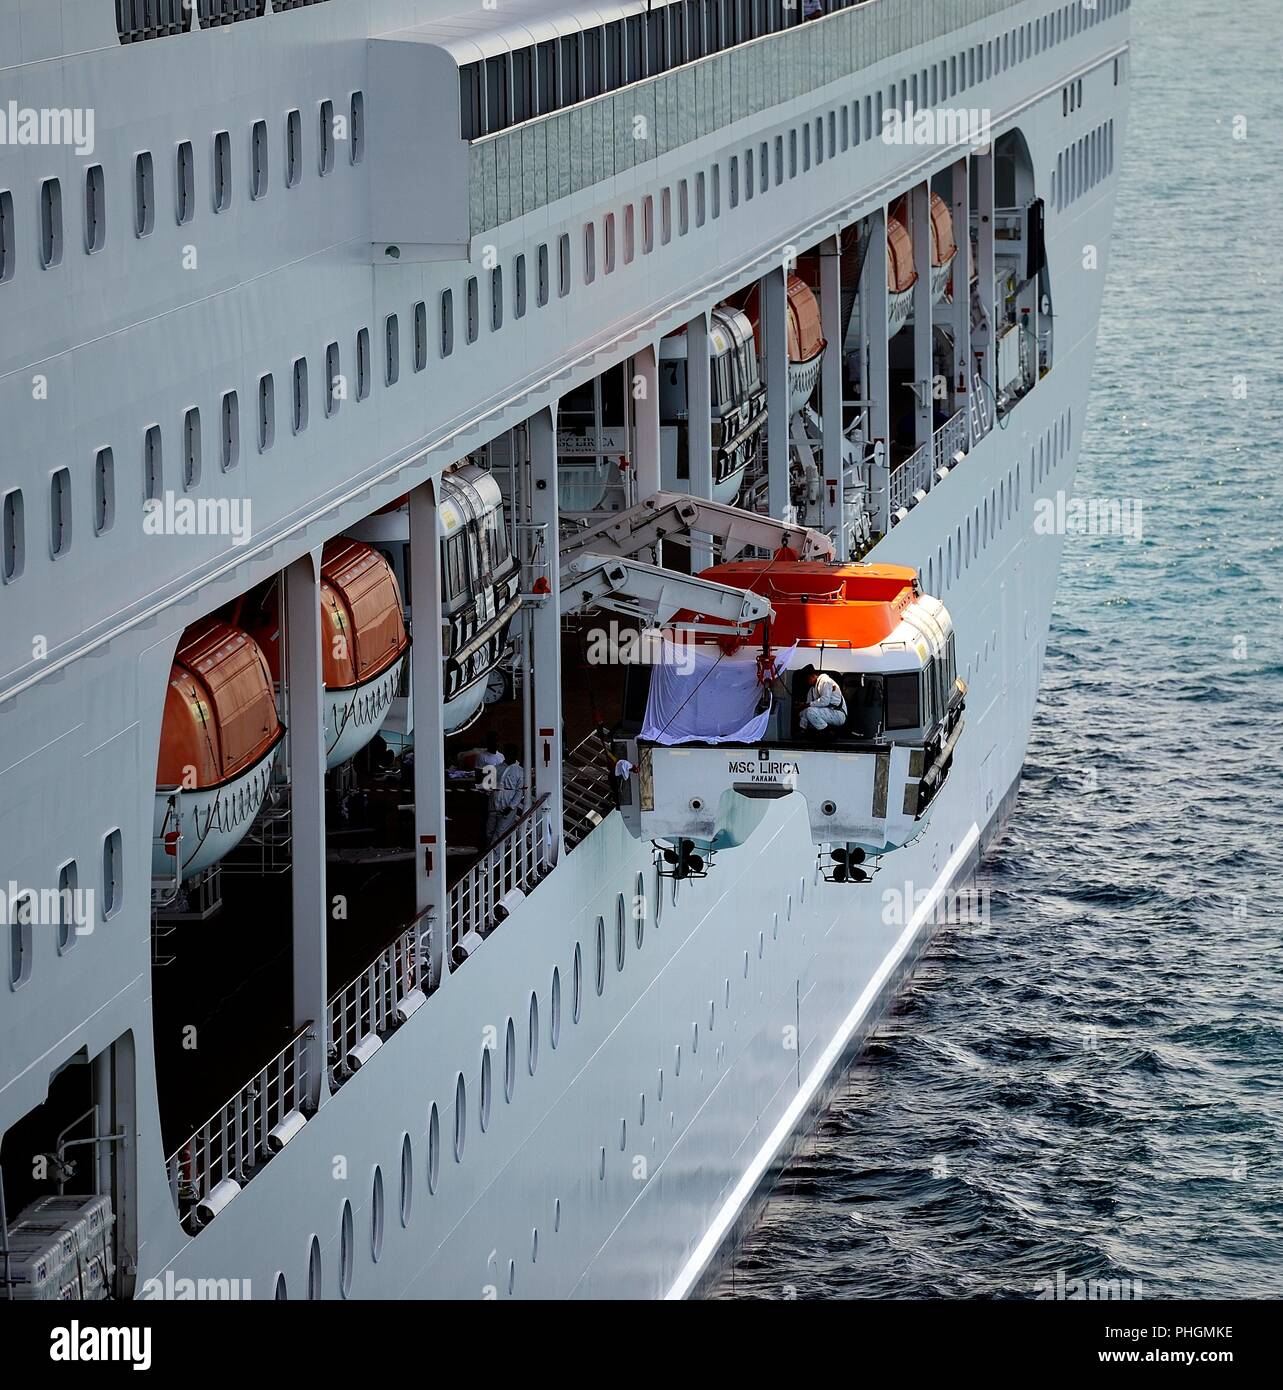 La nave di crociera, Atene, Grecia - luglio 18:MSC Lirica operai sulla  zattera mentre a fianco Foto stock - Alamy